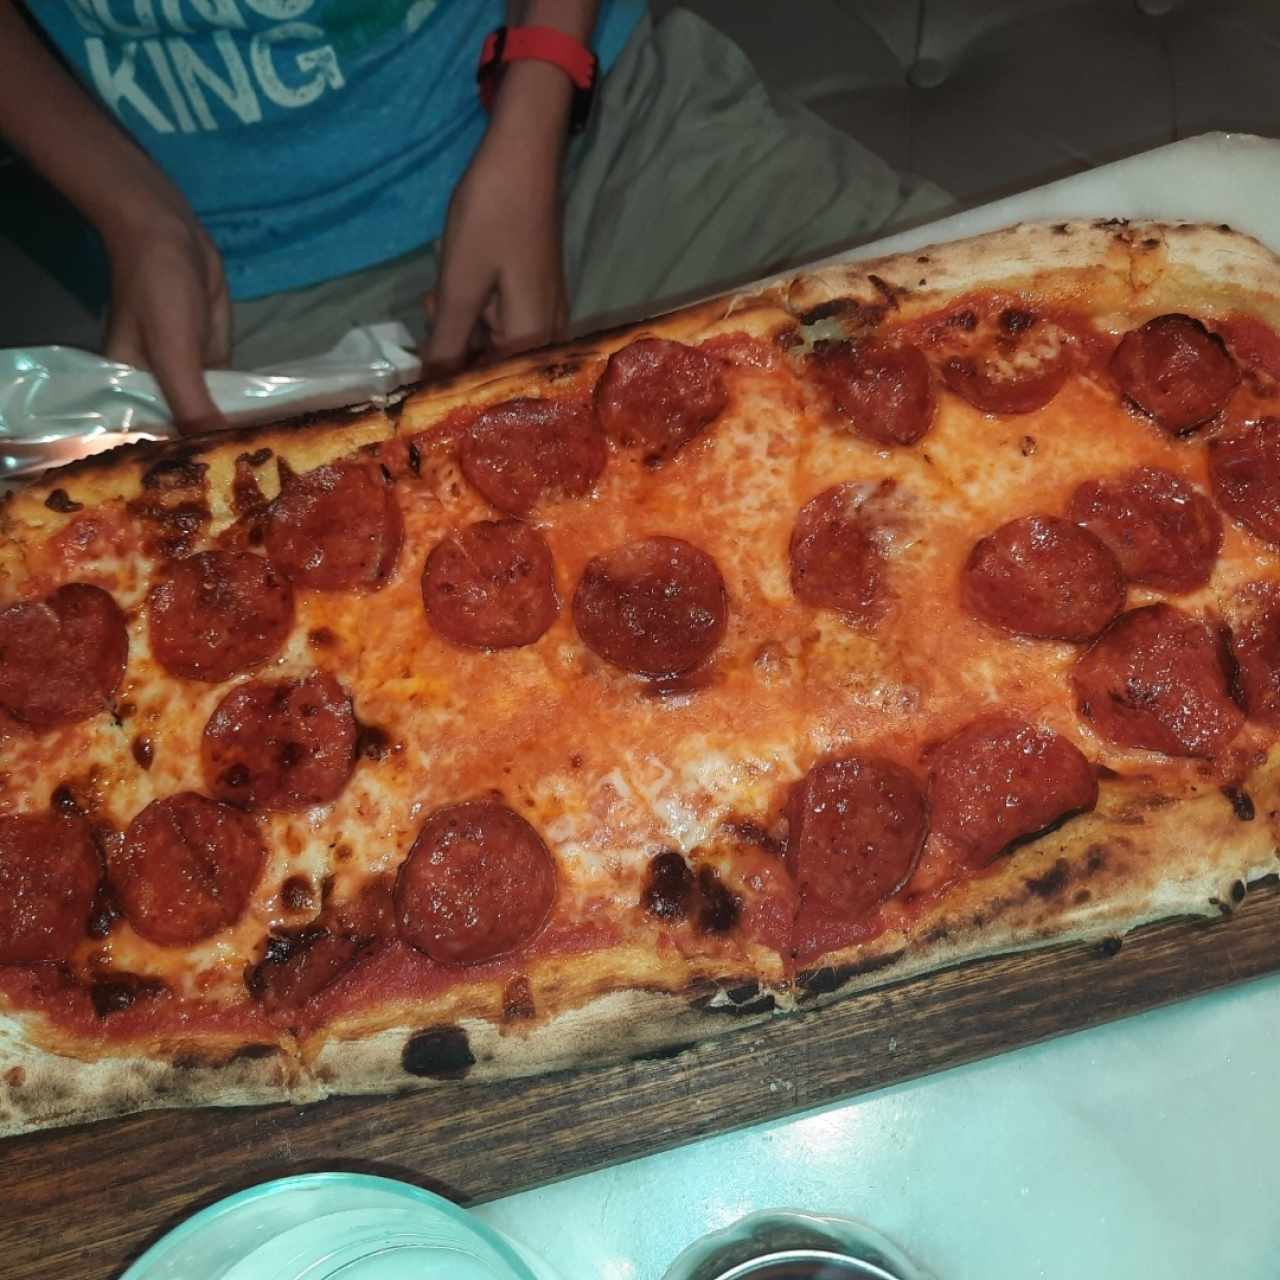 Pizze Rosse - Full Pepperoni